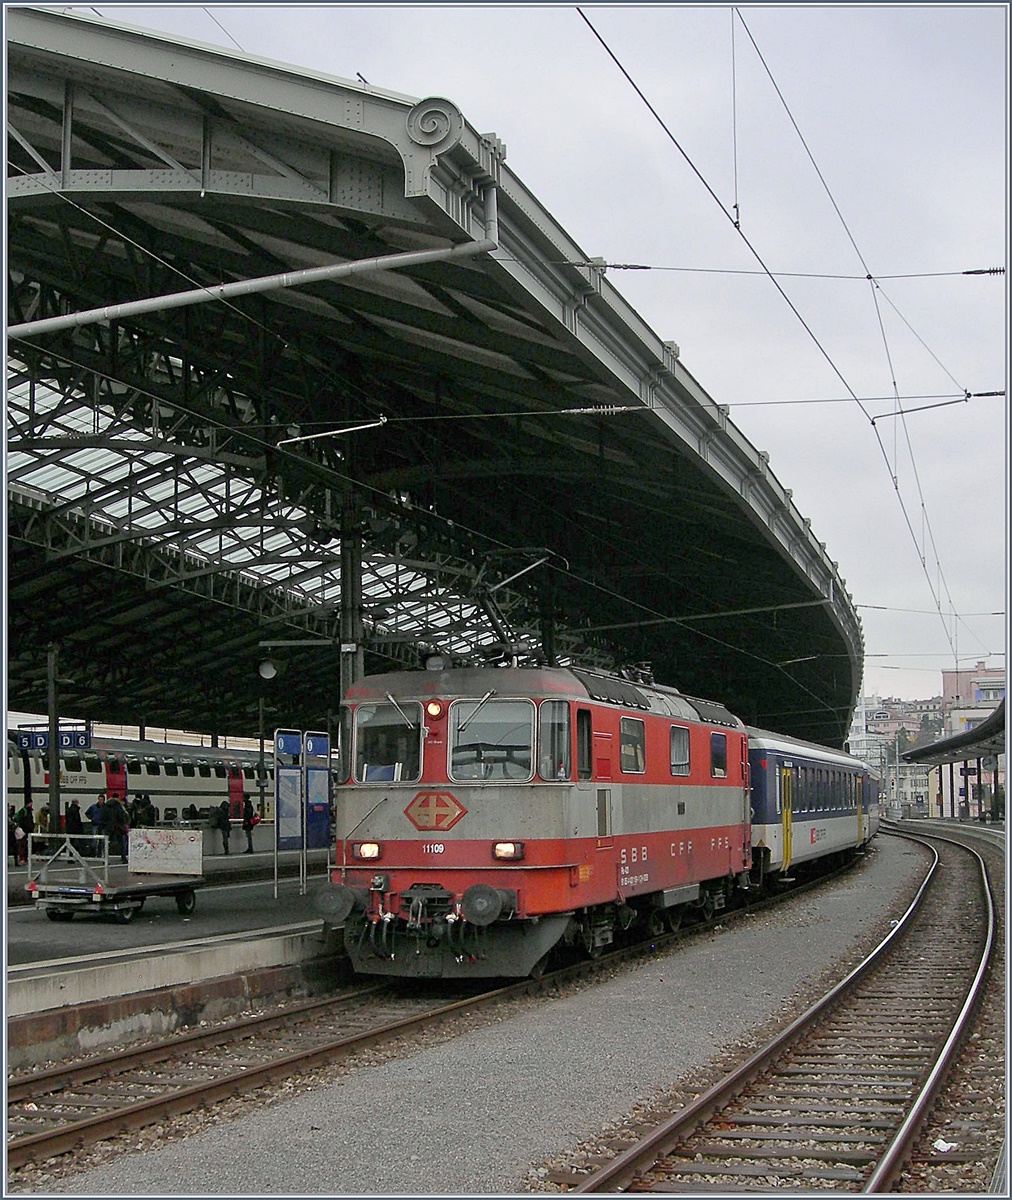 Die SBB Re 4/4 II 11109 in der  Swiss-Expess  Lackierung in Lausanne.
9. Jan. 2017